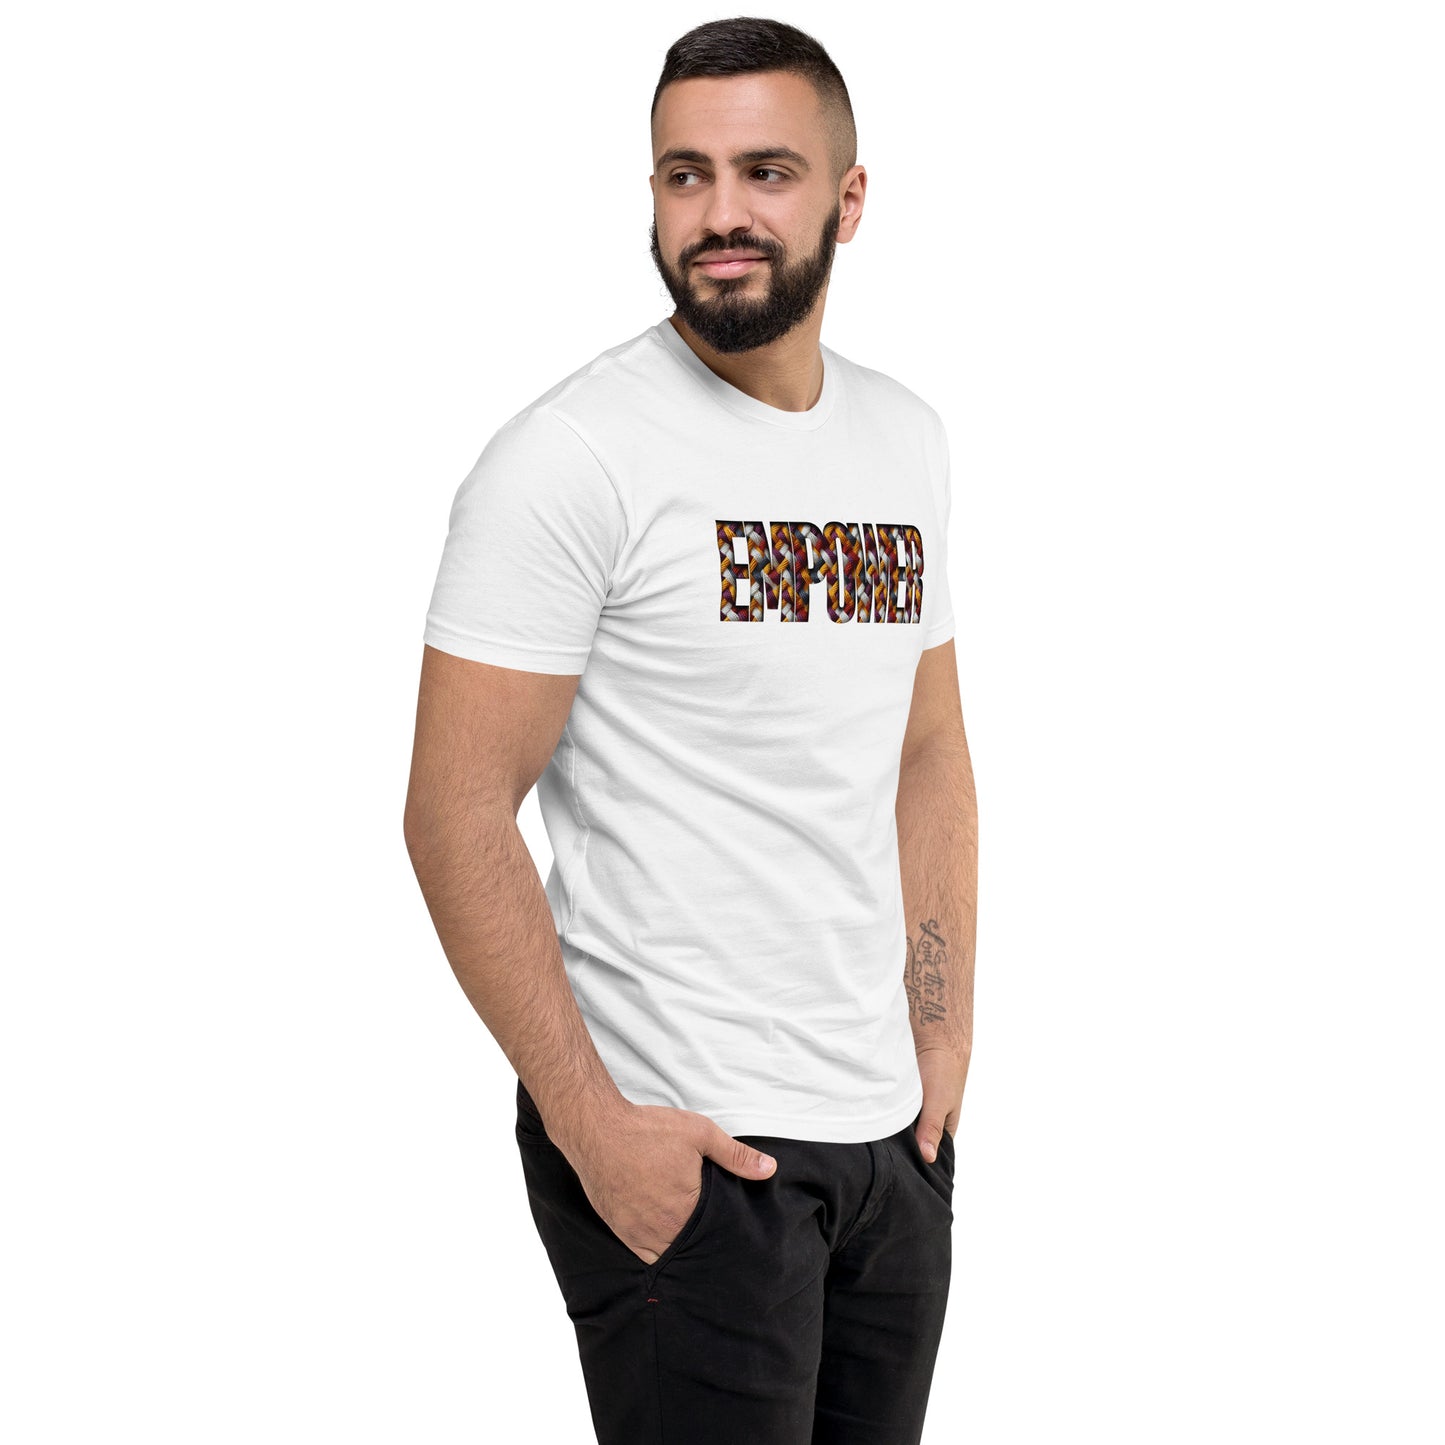 FBB Empower Knit Short Sleeve T-shirt